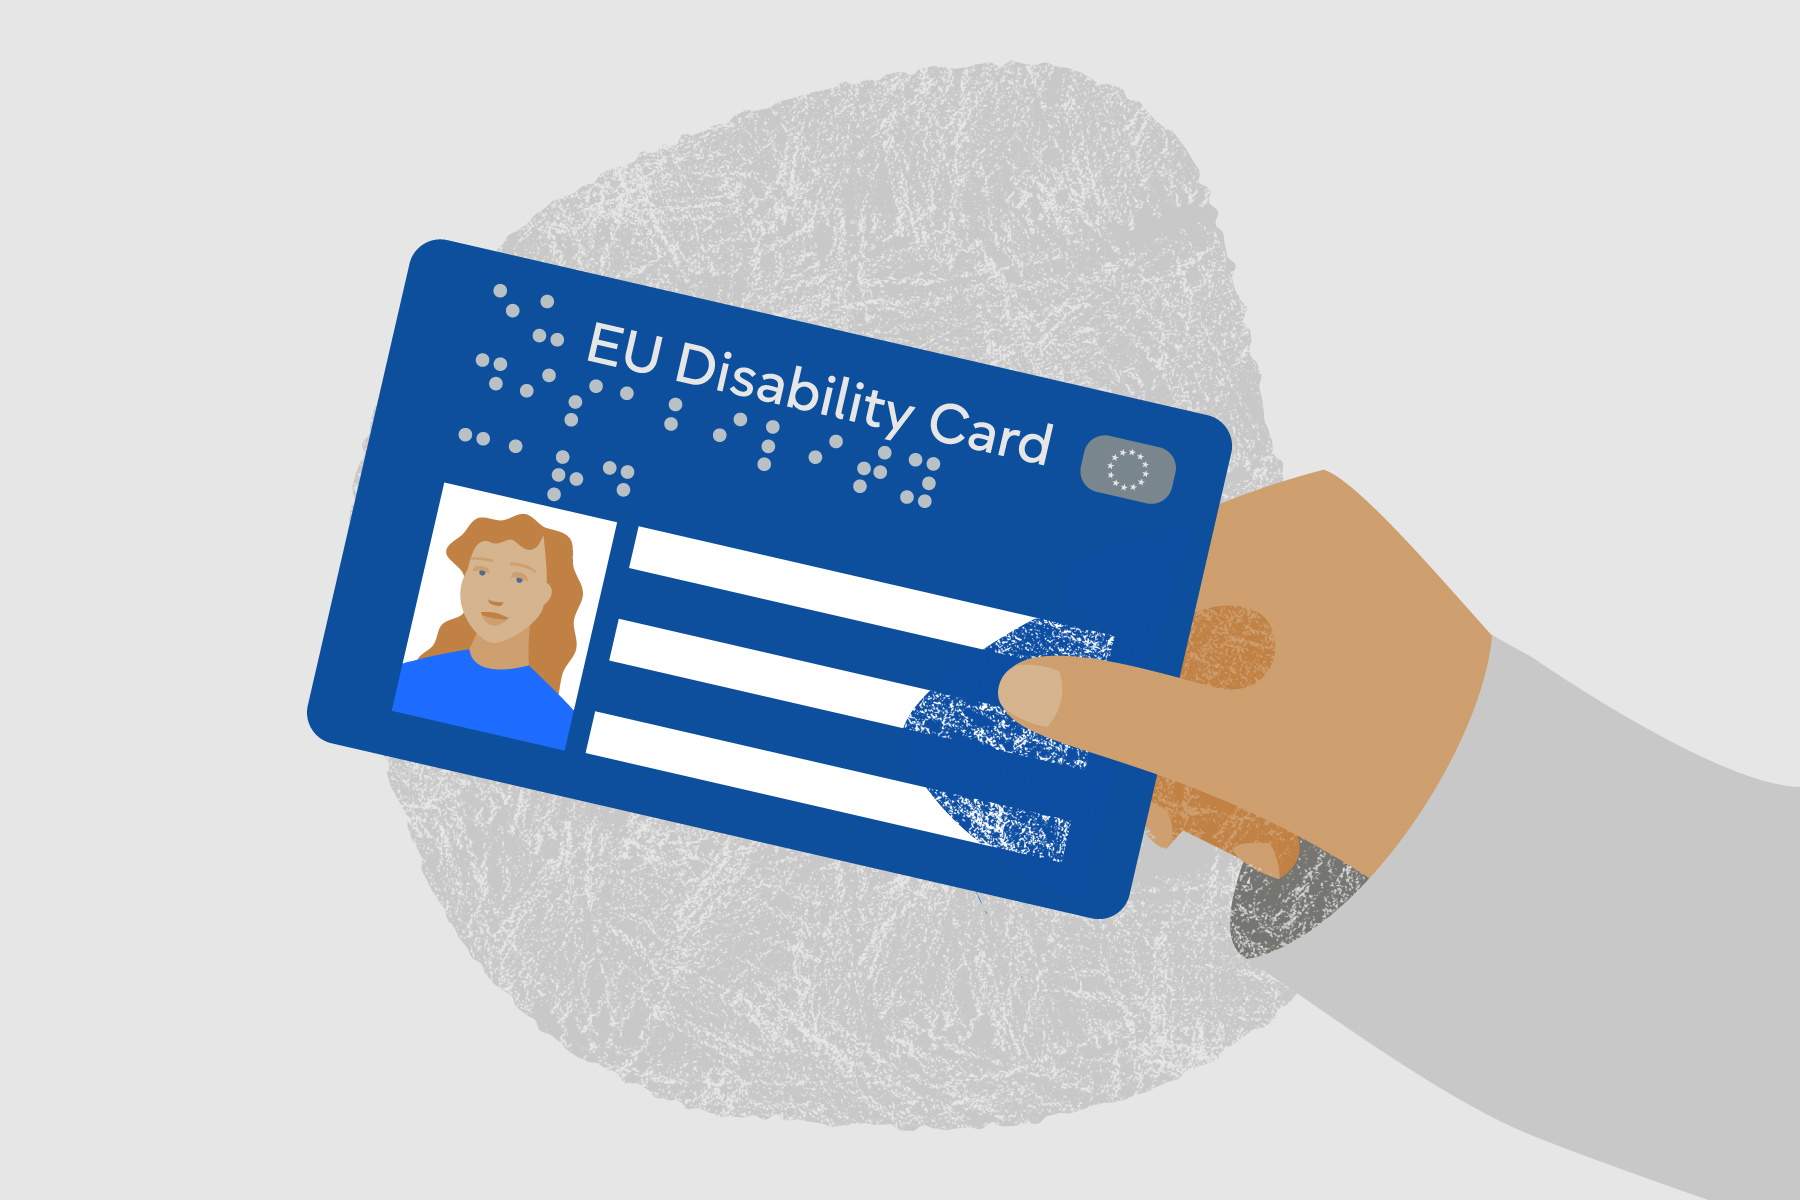 S’aproven les targetes europees de Discapacitat per garantir les mateixes condicions fora dels estats